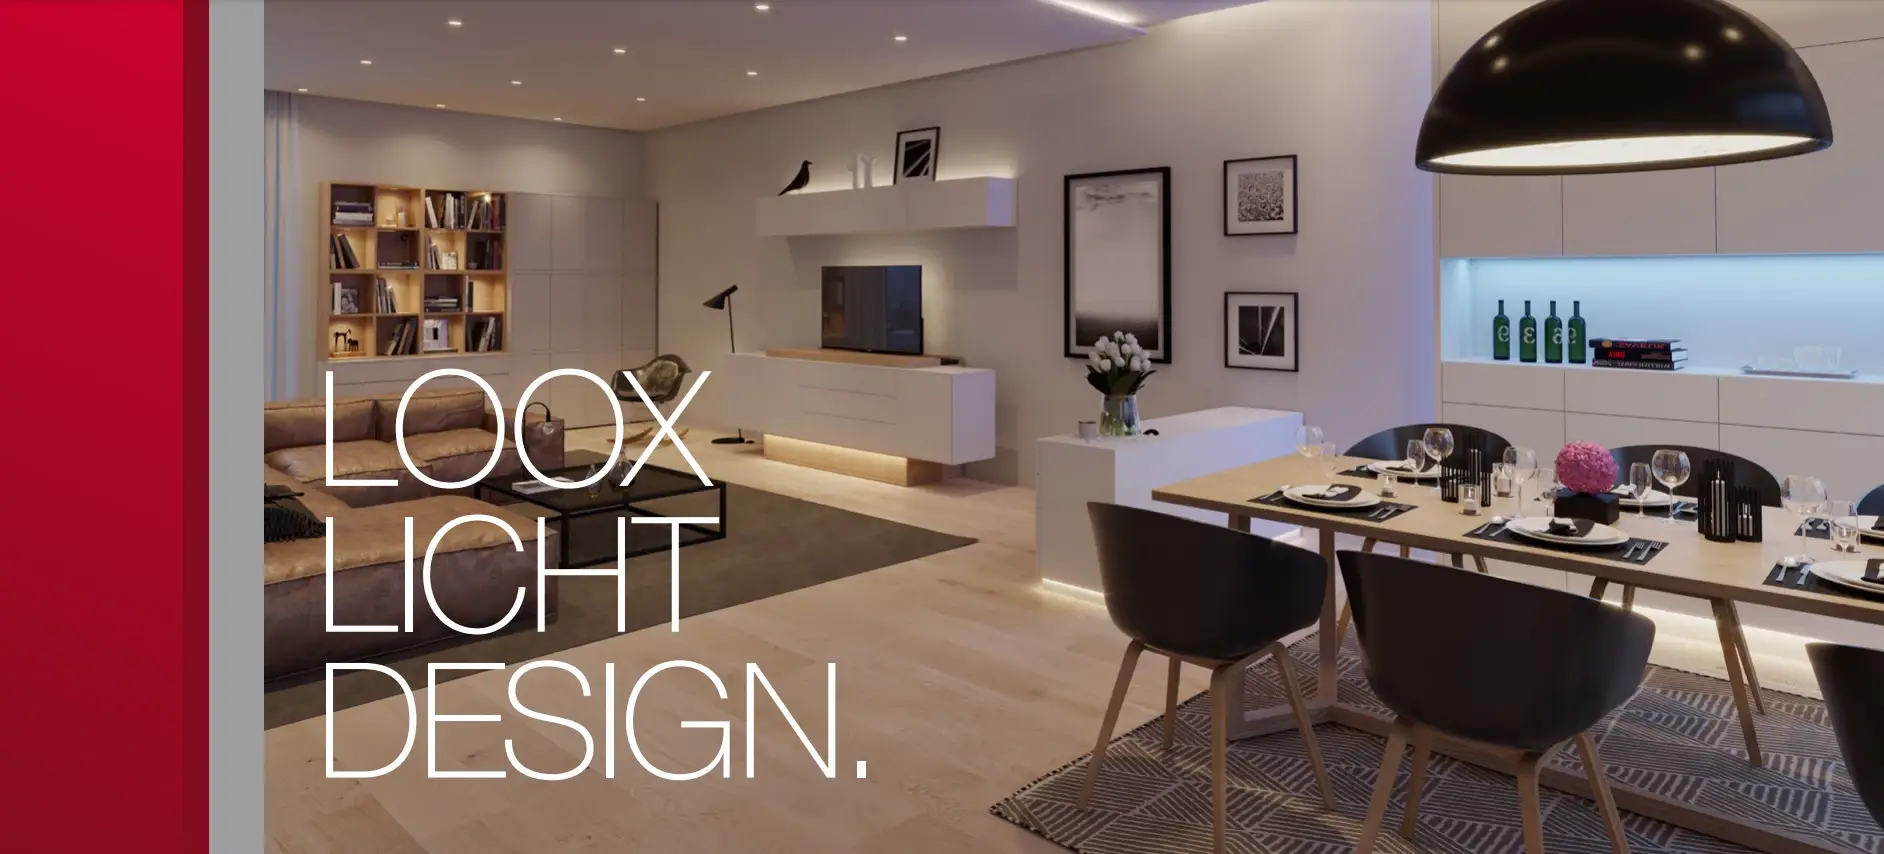 gutbeleuchtetes Wohnzimmer mit Loox Licht Design